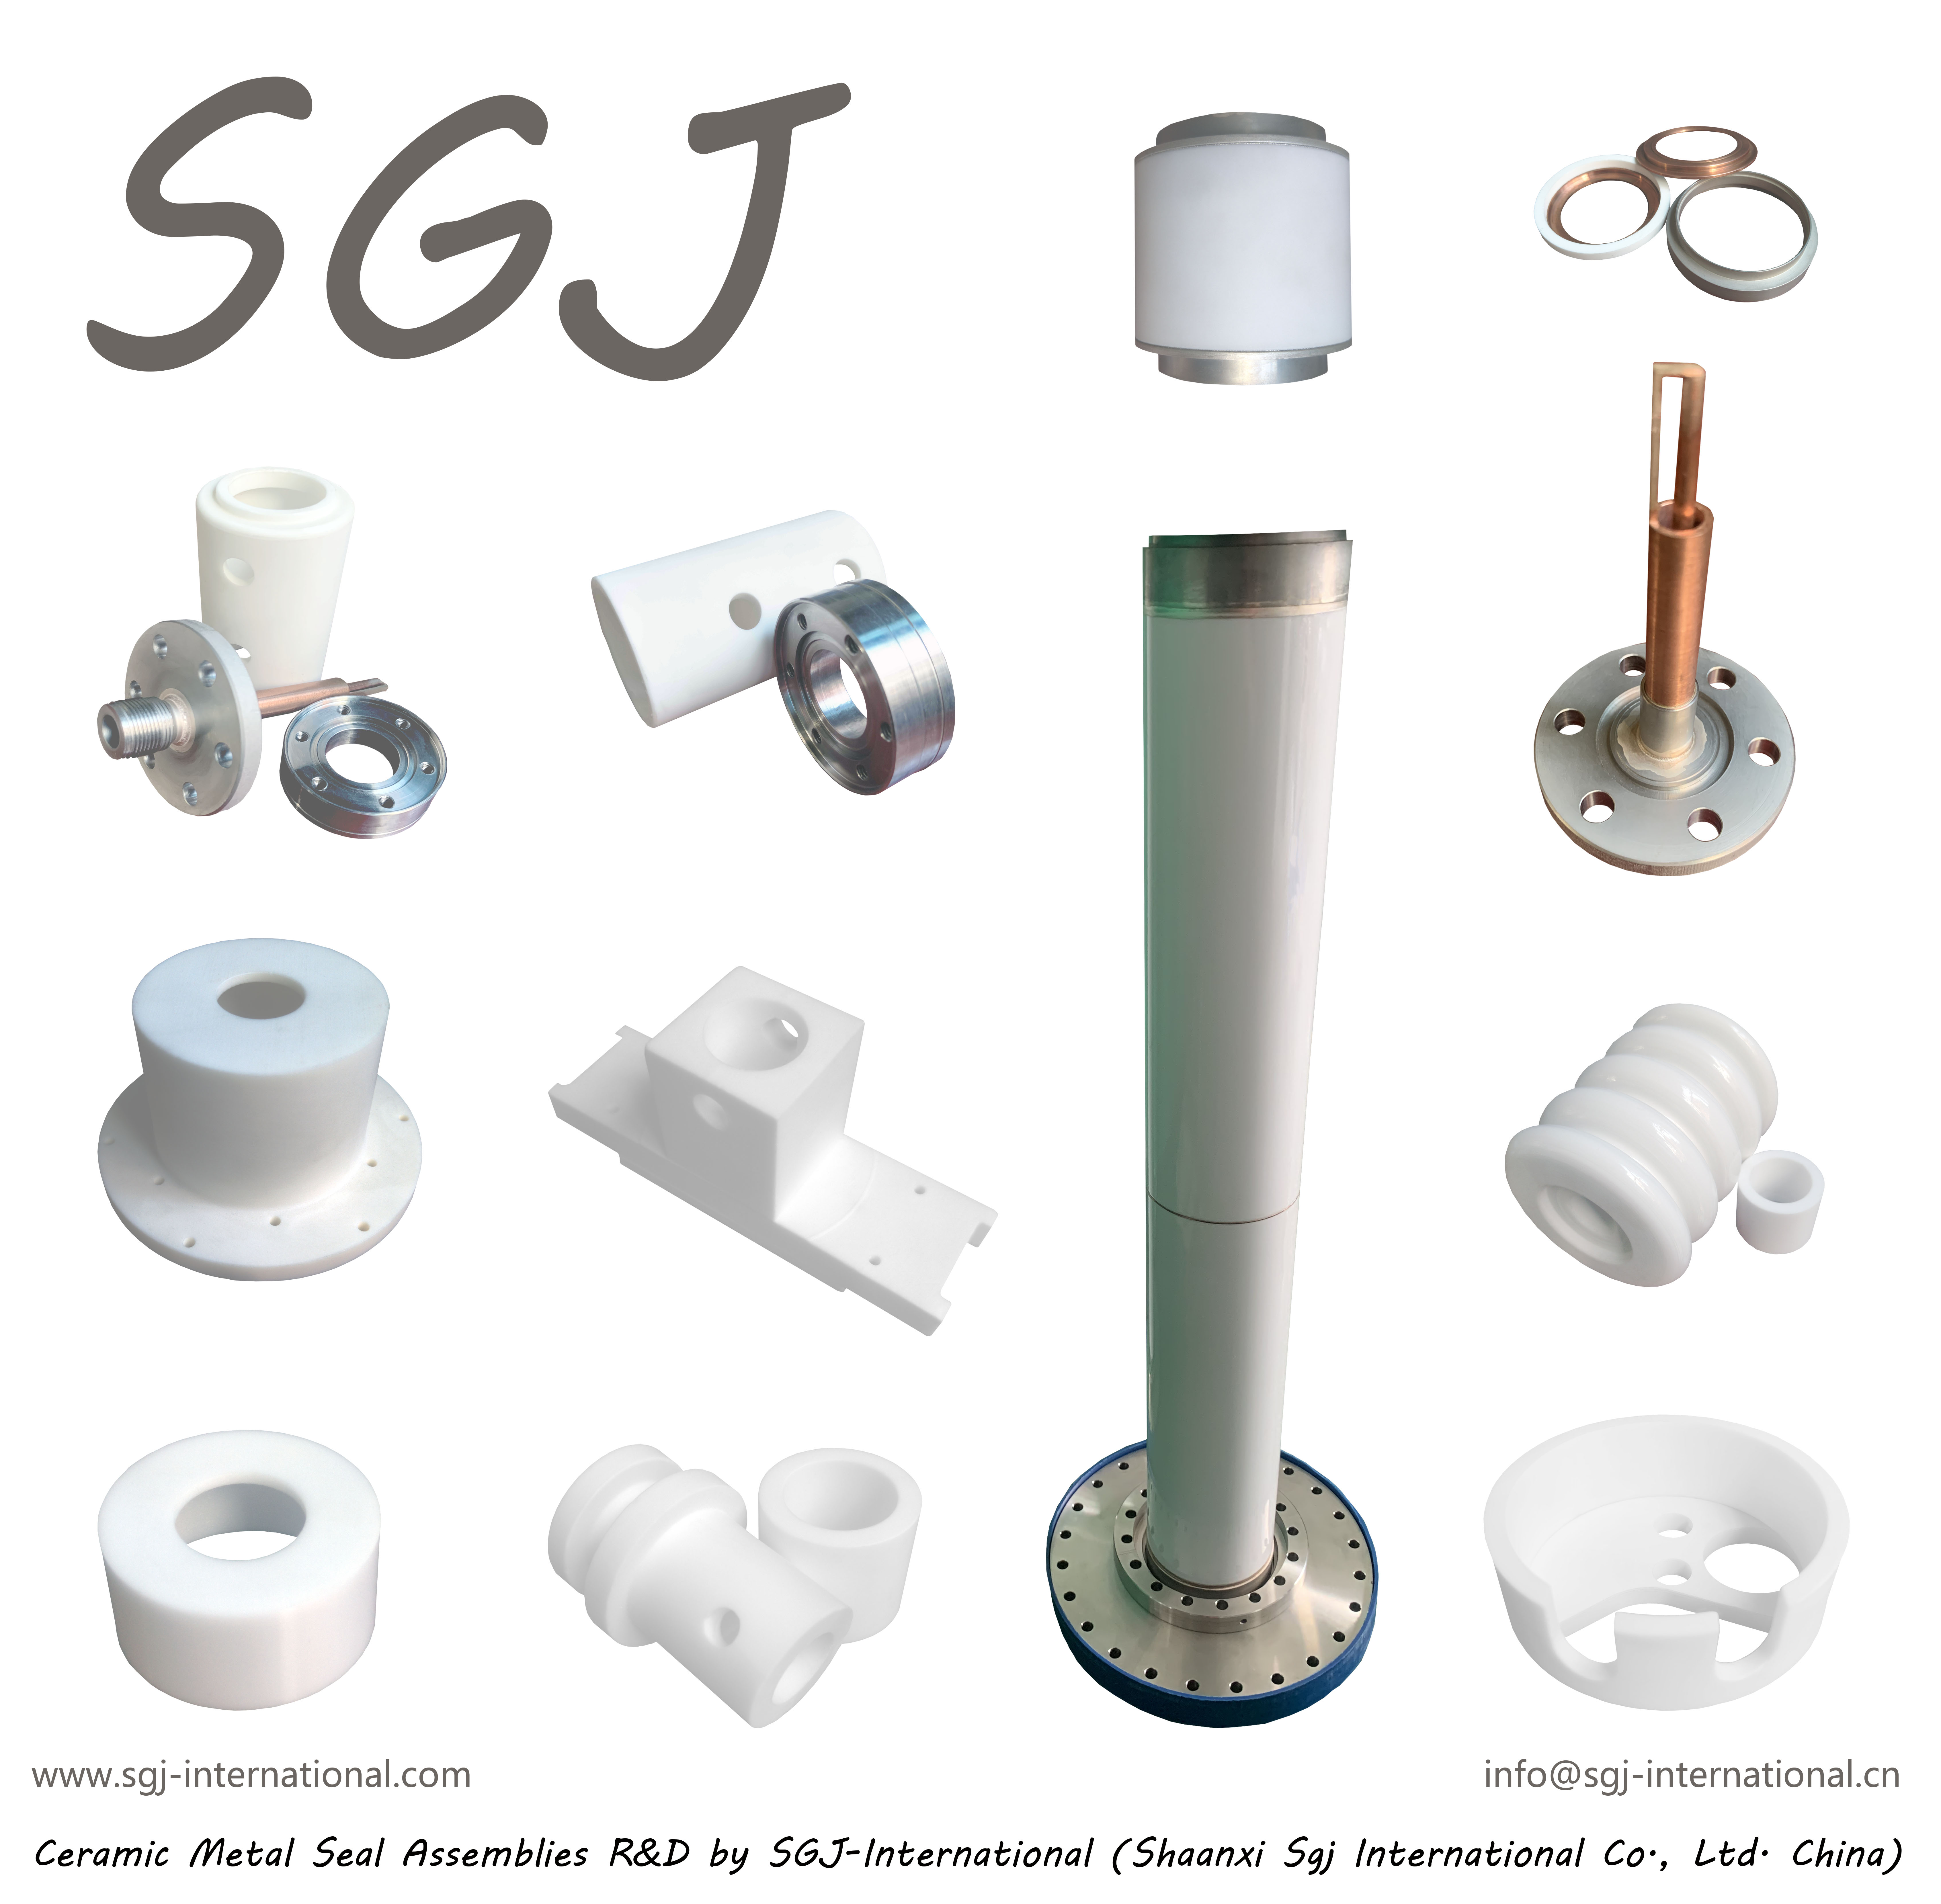 ورودی SGJ، جداکننده، الکترودها، اتصال دهنده